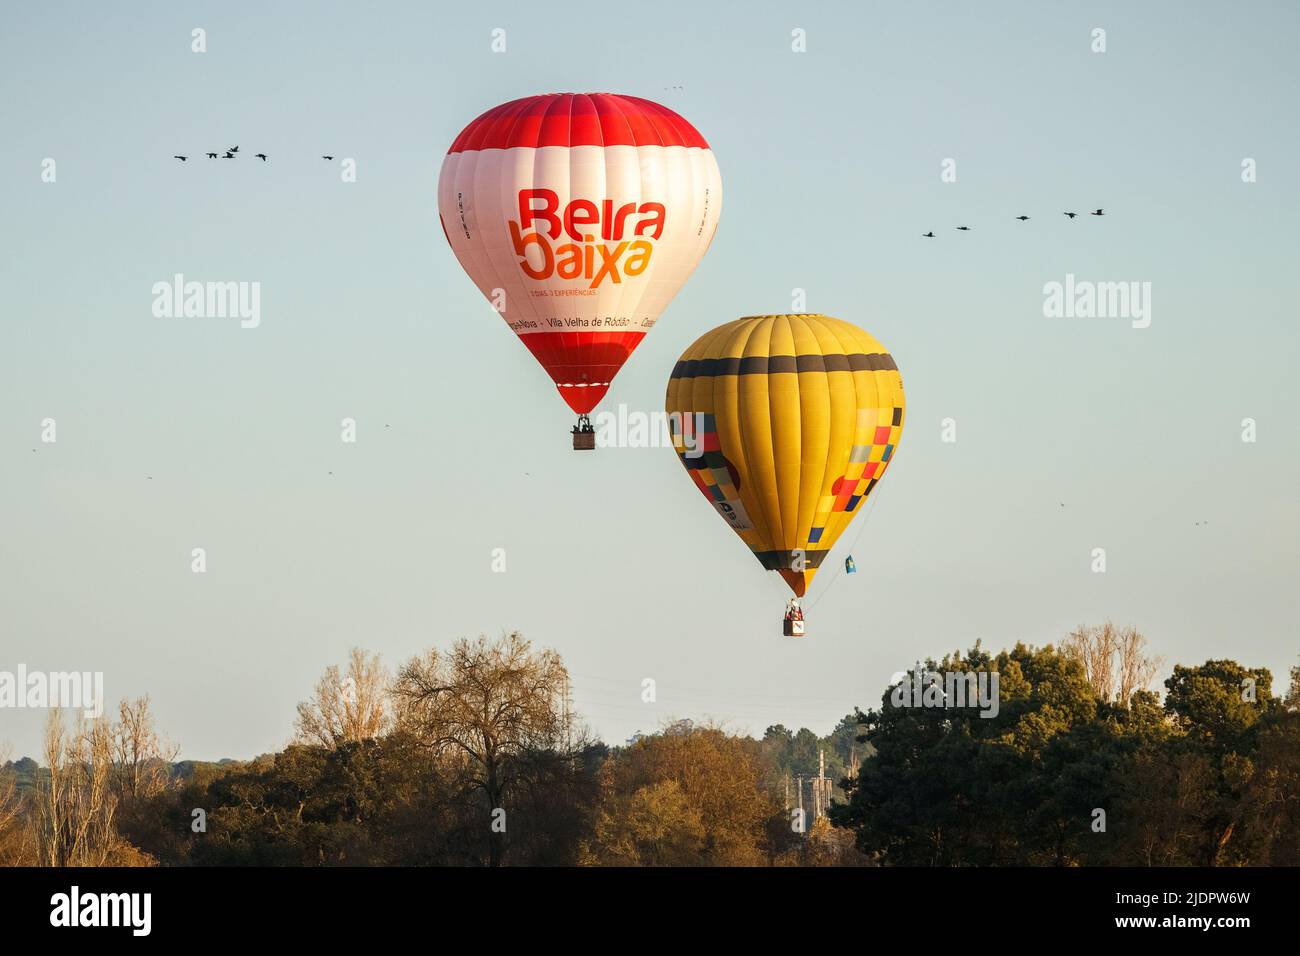 Coruche, Portogallo - 13 novembre 2021: Due palloncini ad aria calda che volano sugli alberi con un gruppo di uccelli su entrambi i lati dei palloncini a Coruche, Portuga Foto Stock